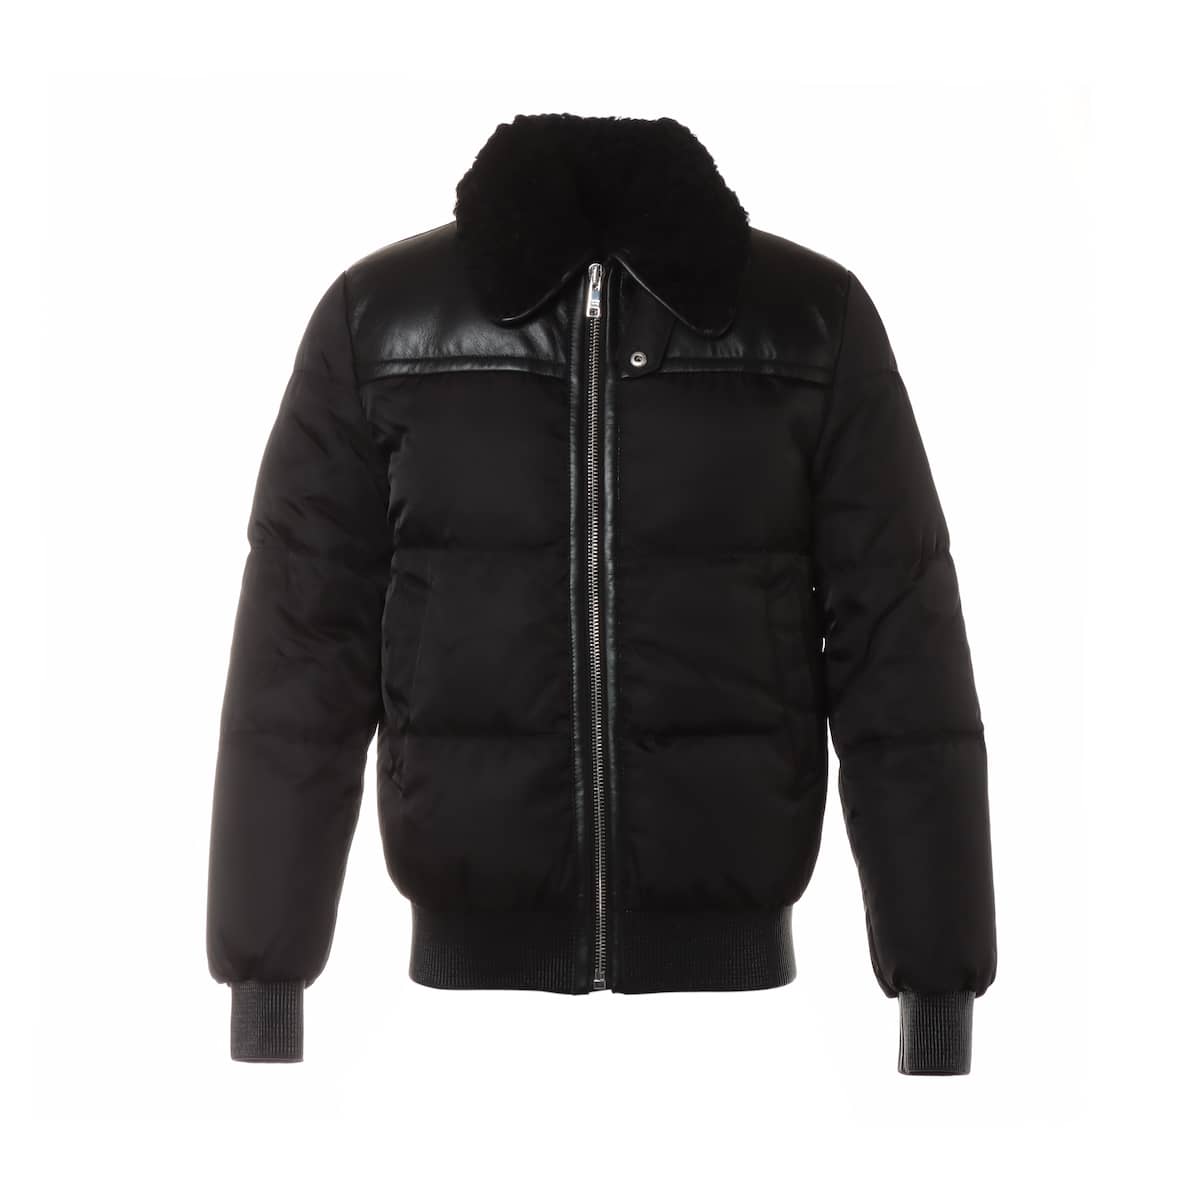 Prada 18AW Polyamide Down jacket 46 Men's Black  SGN802 Leather switching